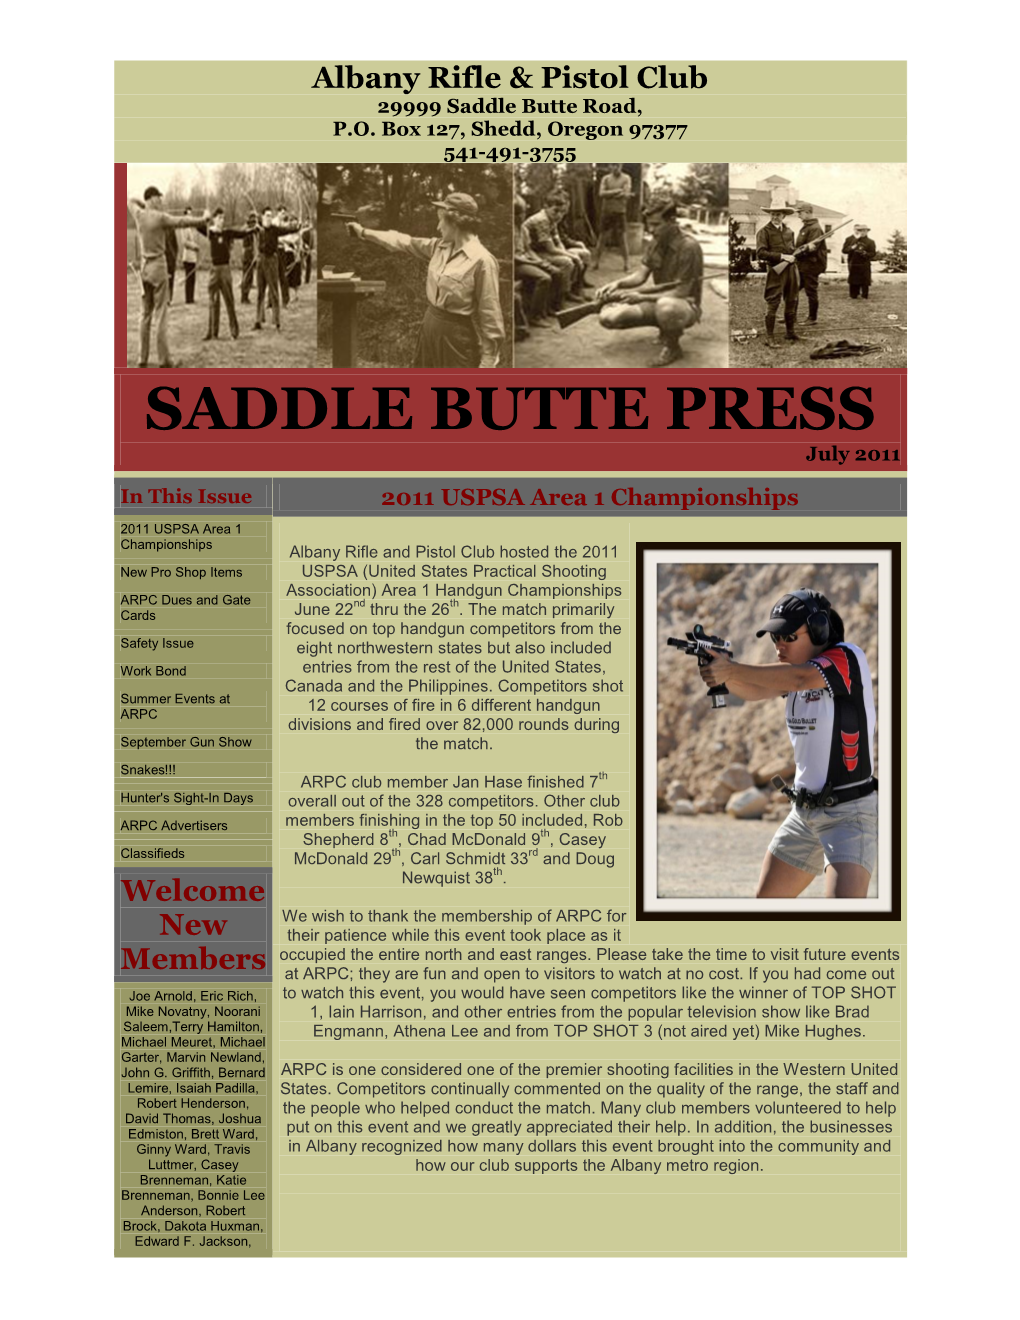 SADDLE BUTTE PRESS July 2011